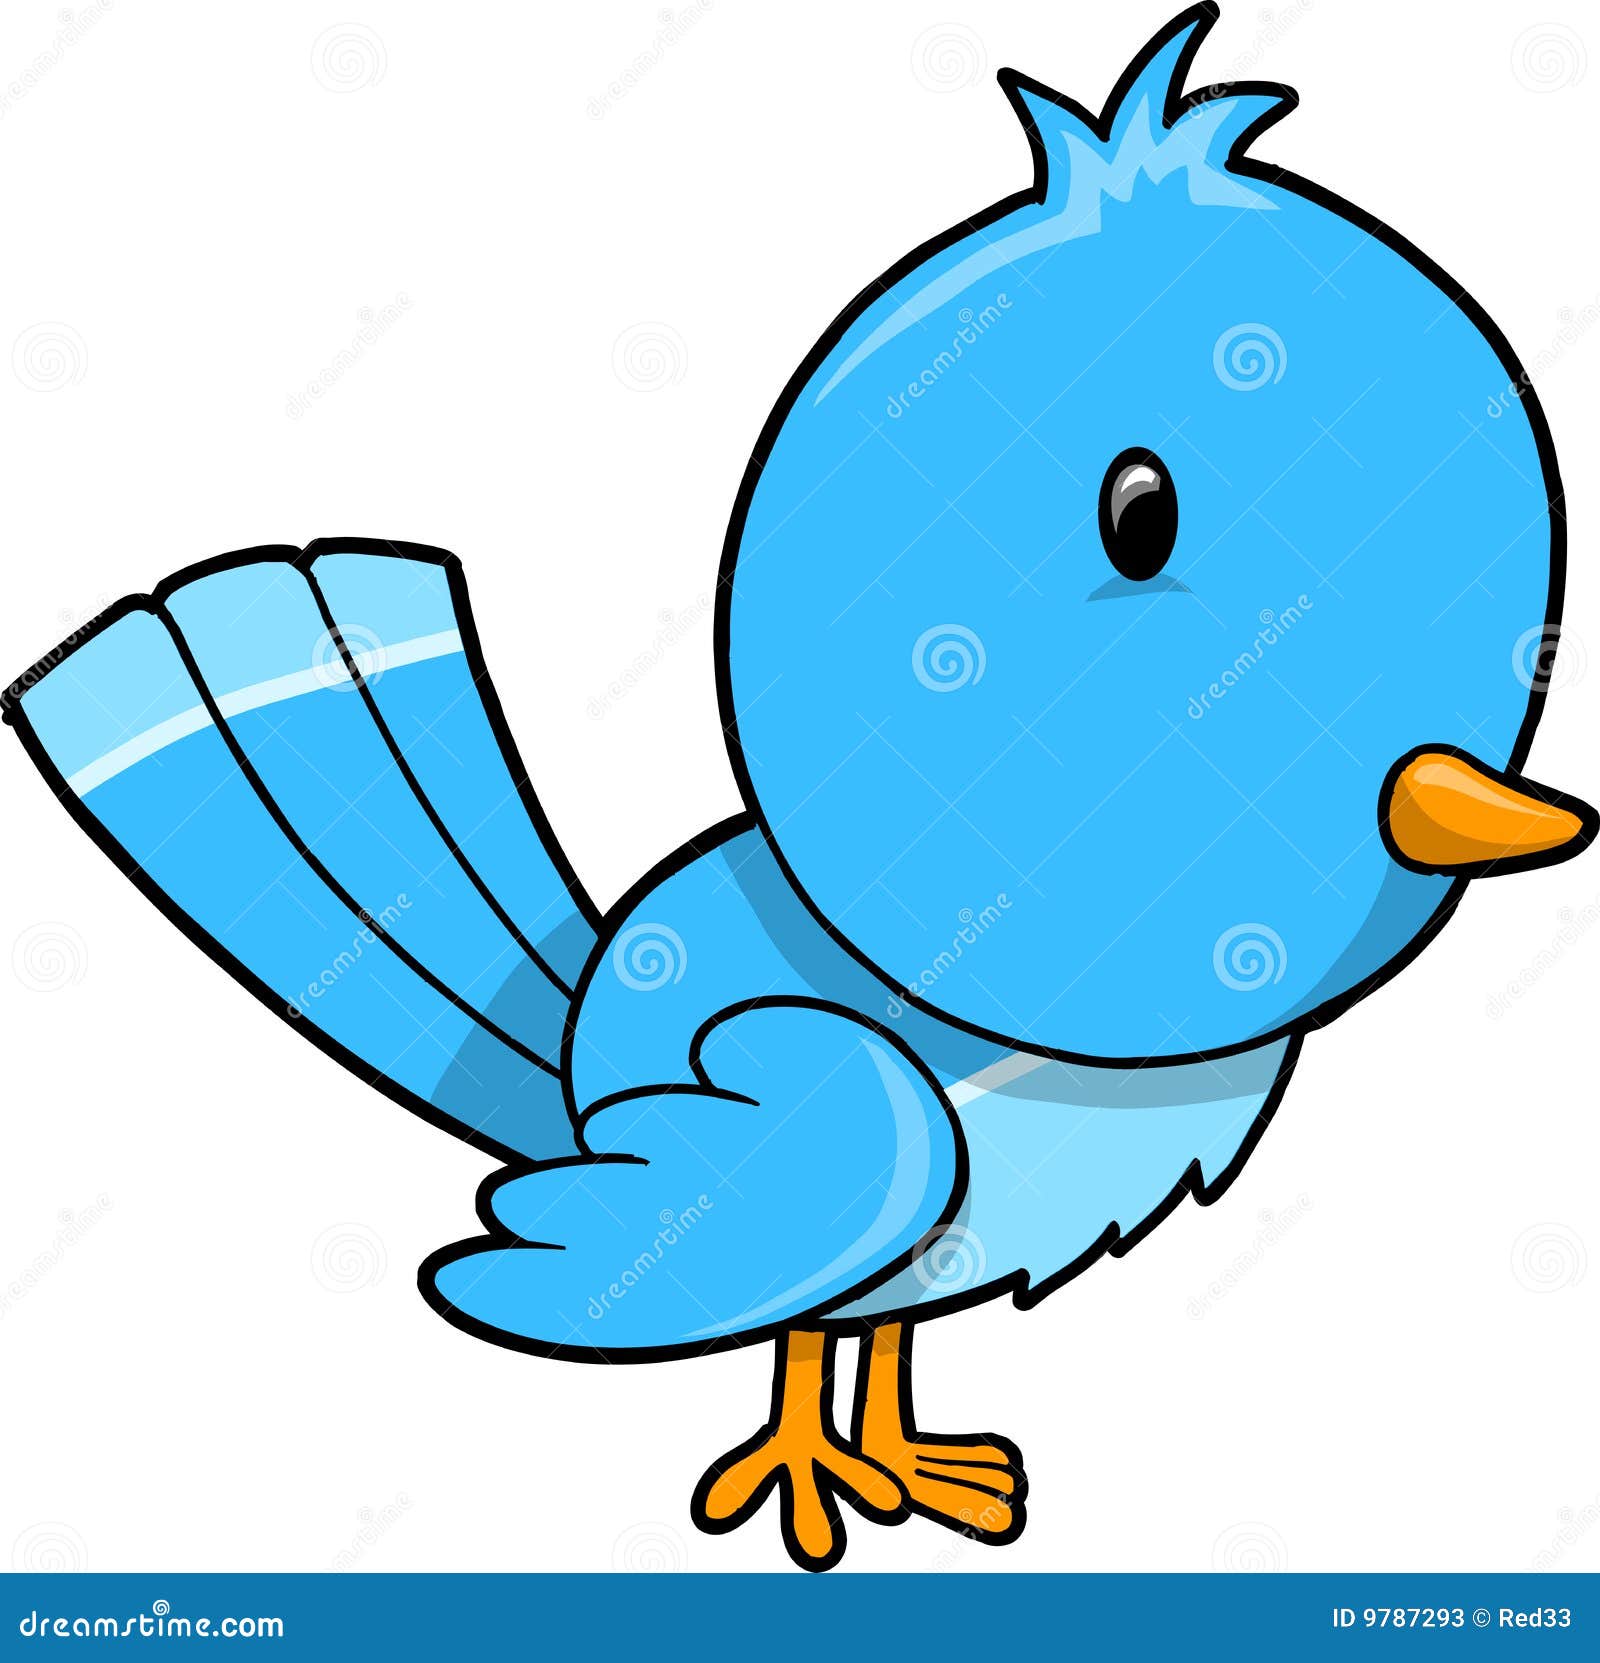 Cute Blue Bird Vector stock vector. Illustration of bird - 9787293